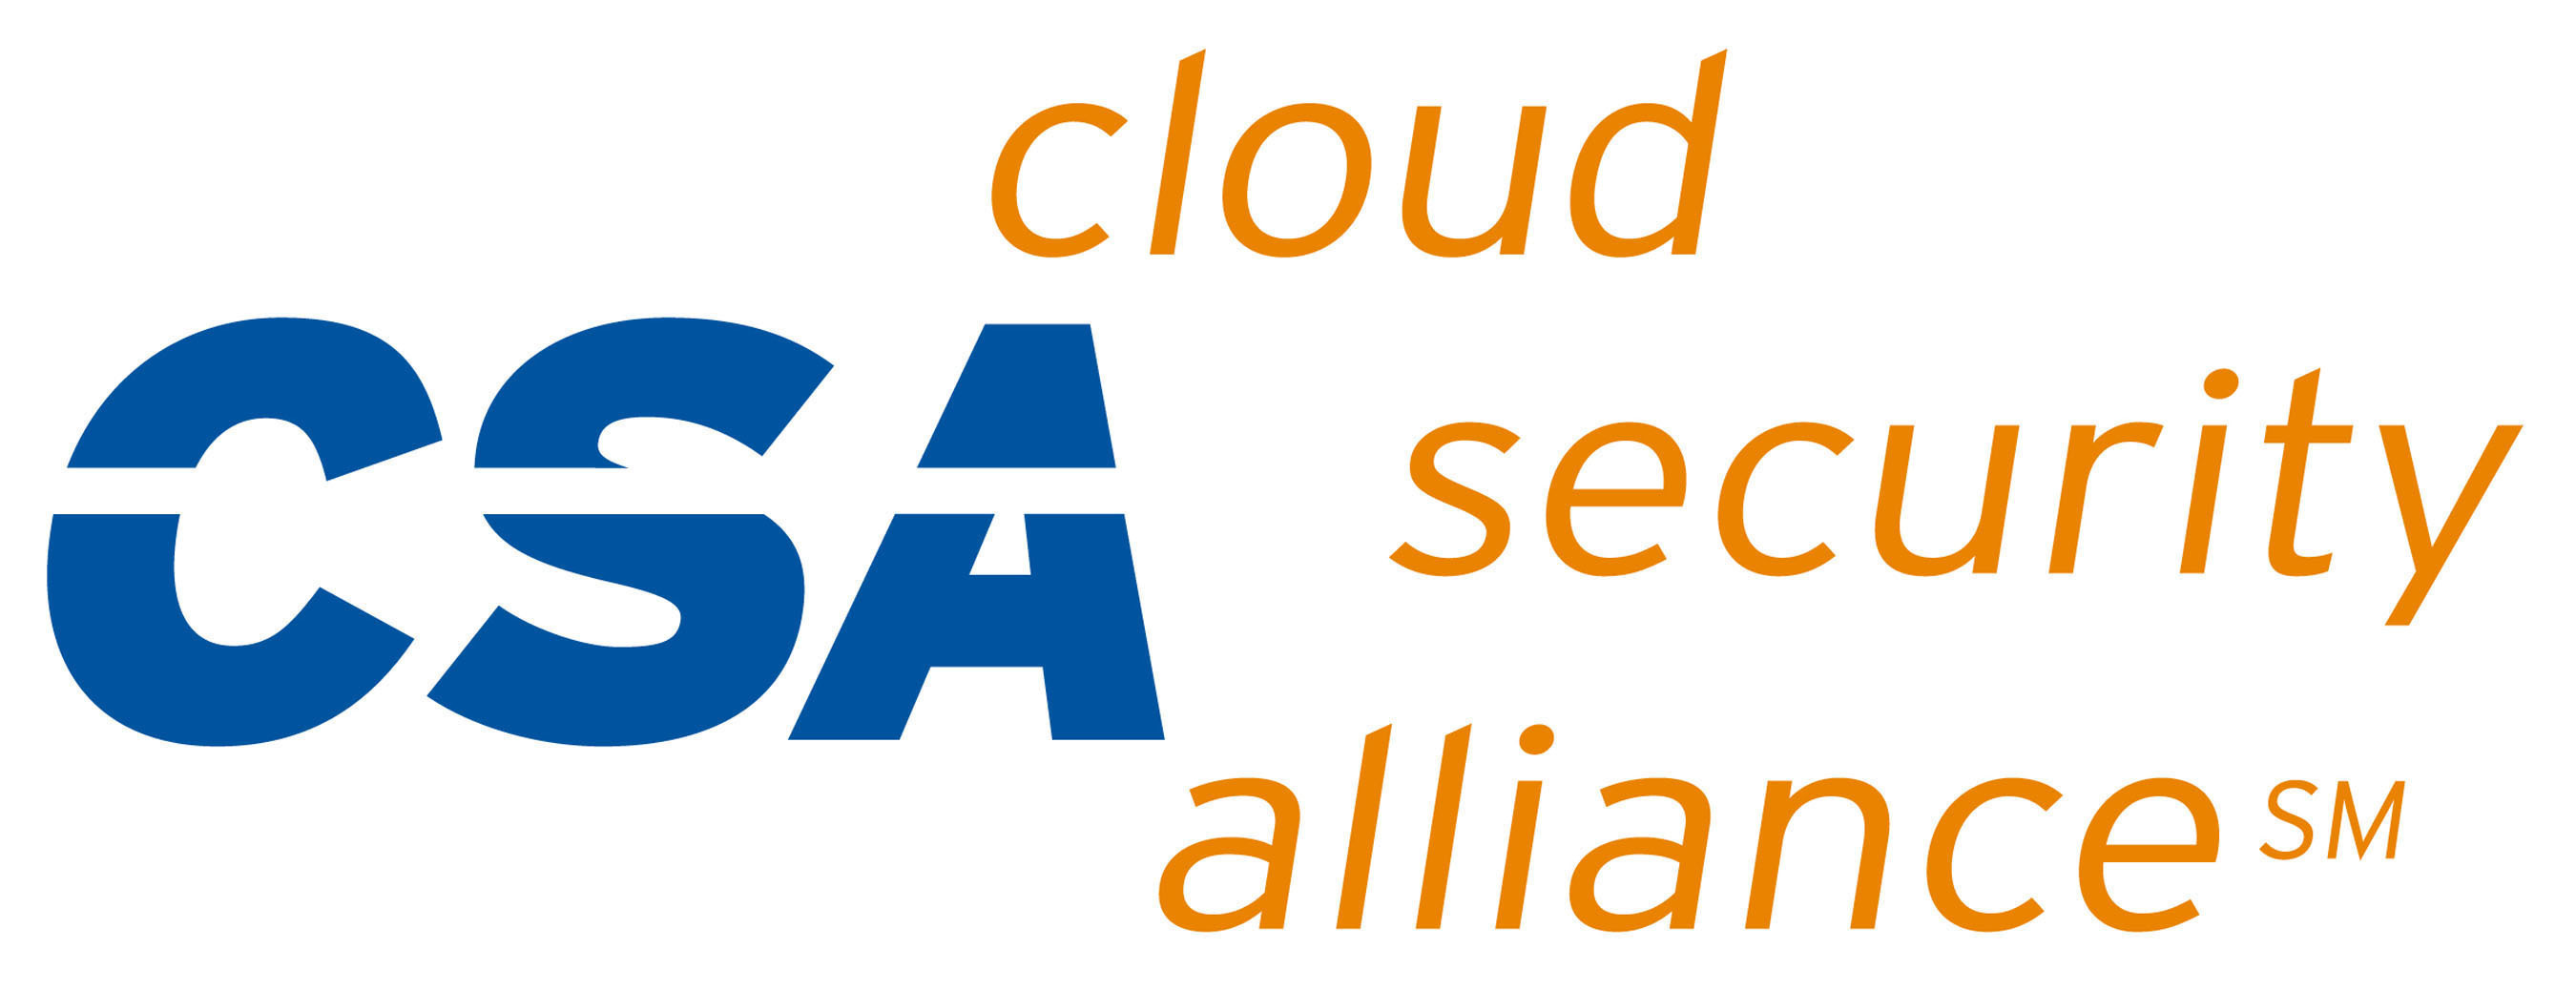 Cloud Security Alliance Logo. (PRNewsFoto/Cloud Security Alliance)